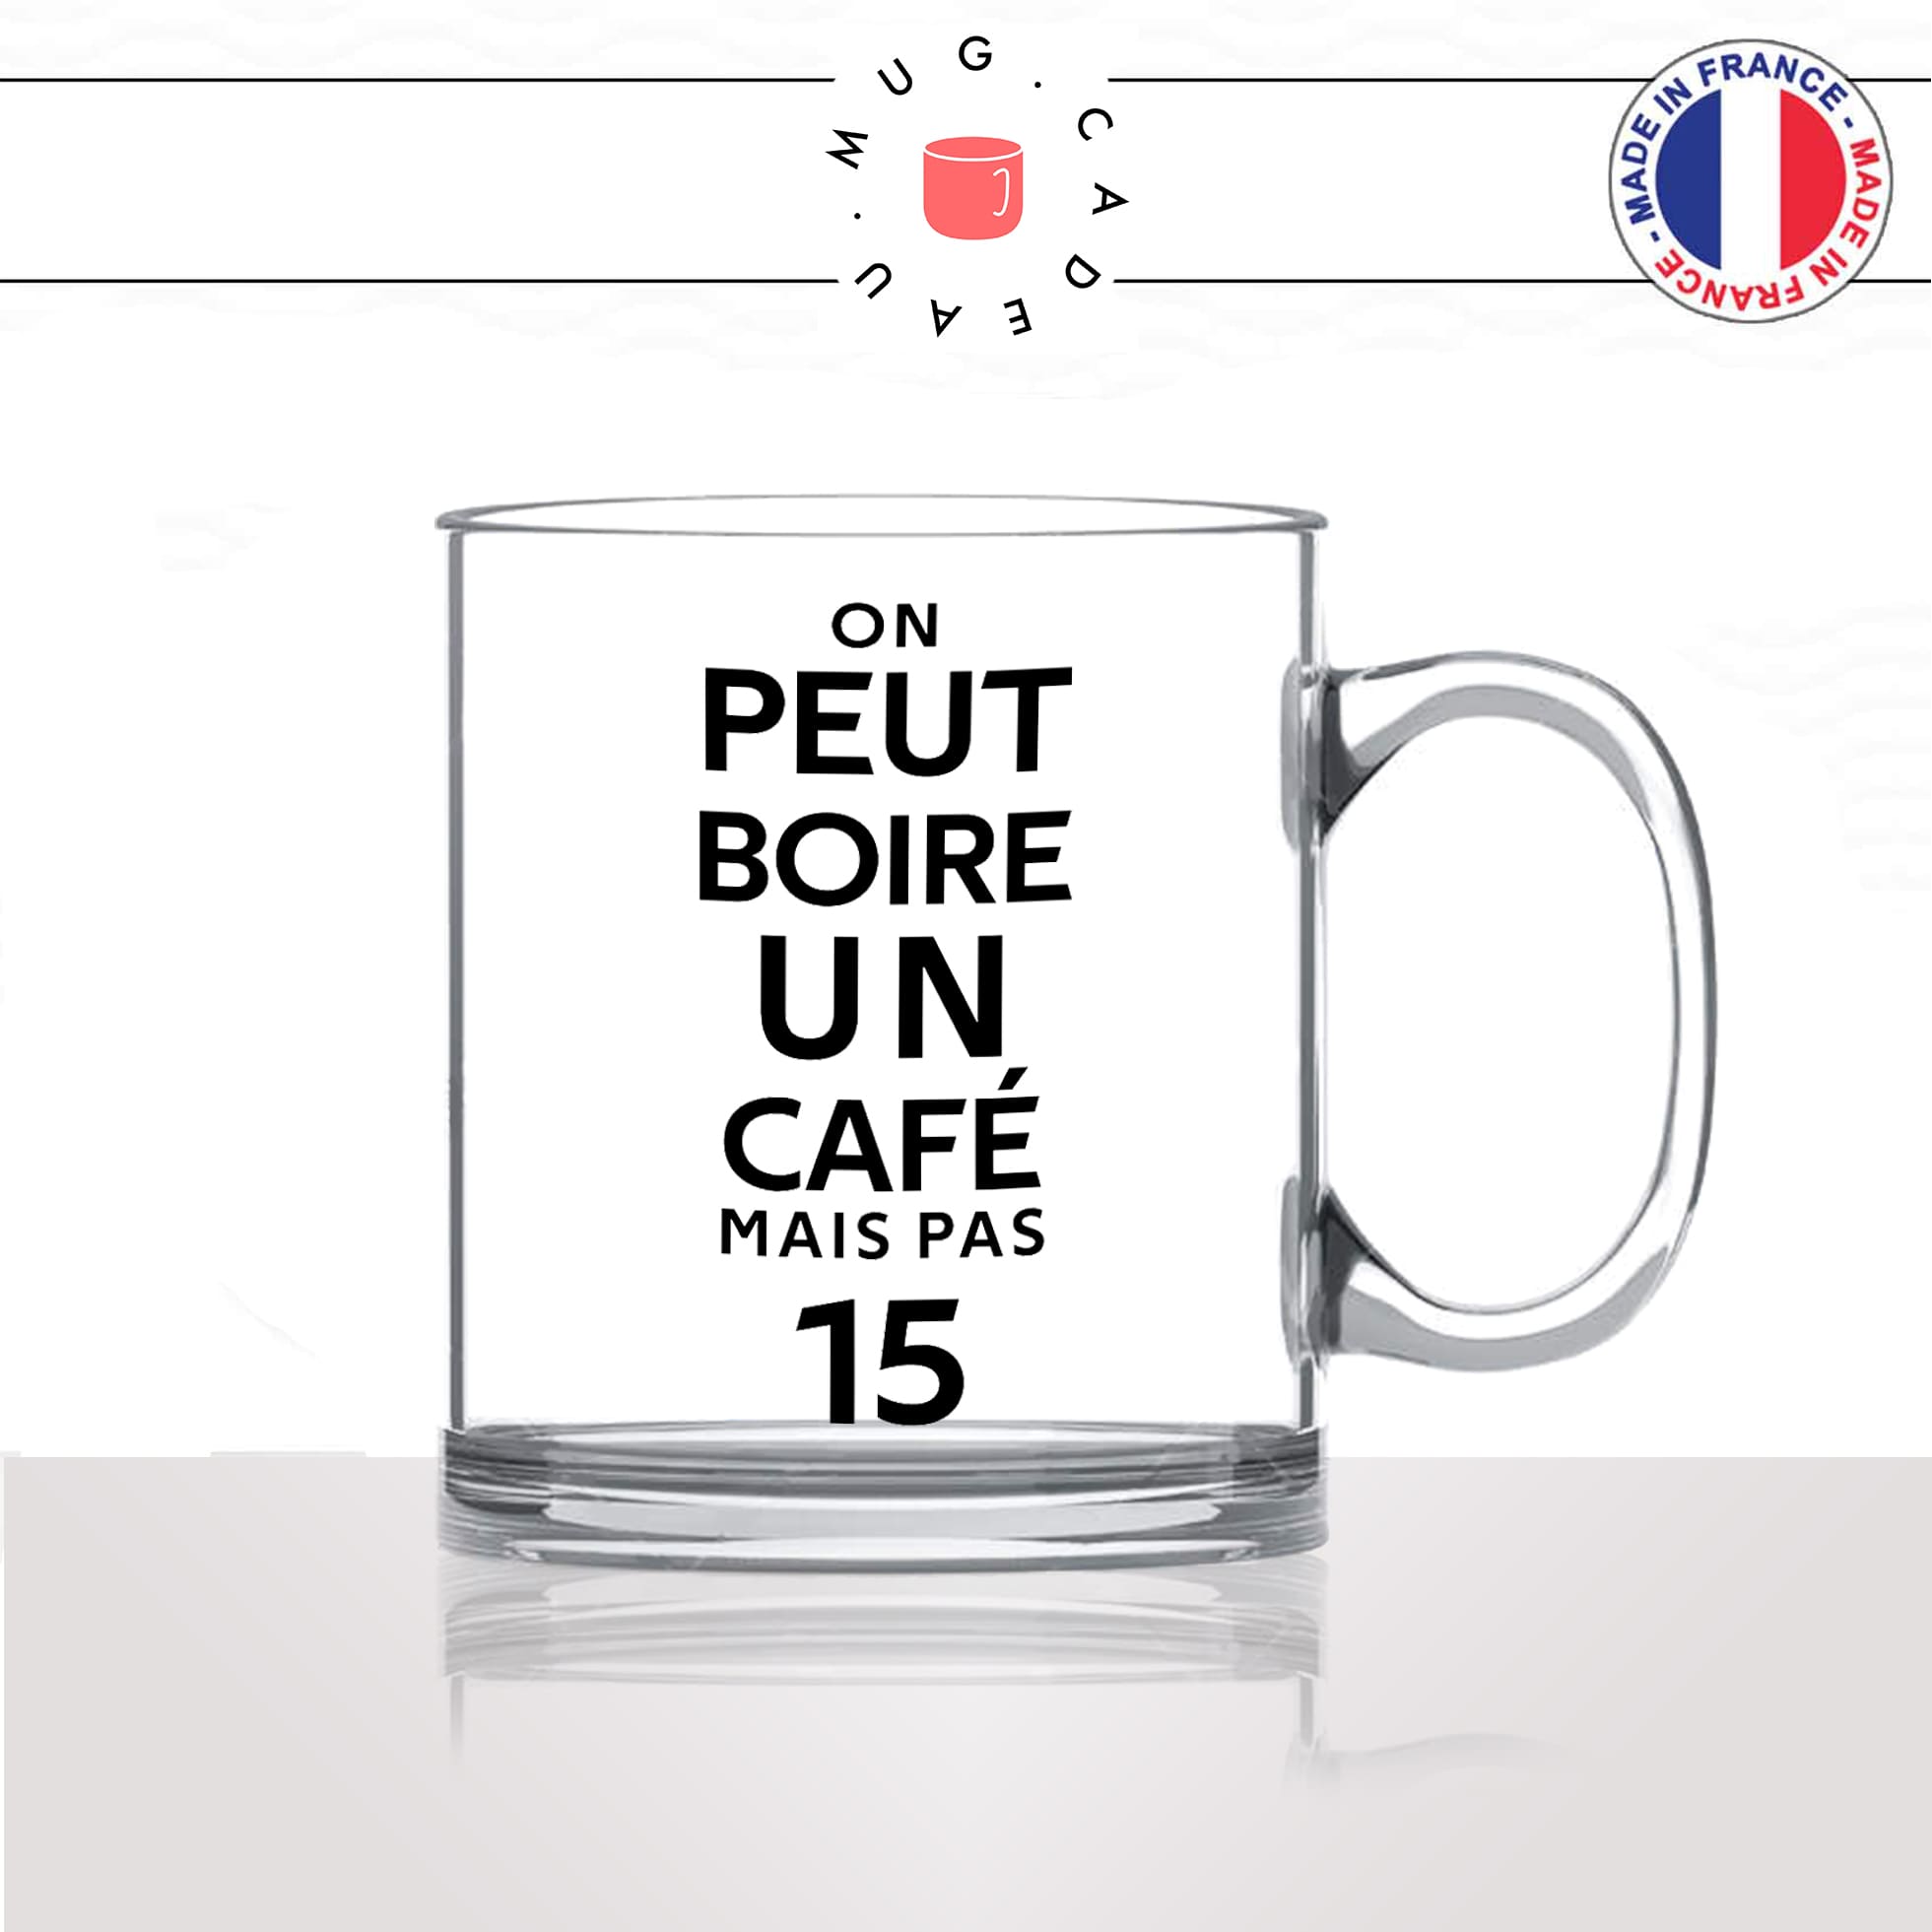 mug-tasse-en-verre-transparent-glass-on-peut-boire-un-café-mais-pas-15-citation-film-les-tuches-parodie-humour-fun-idée-cadeau-original2